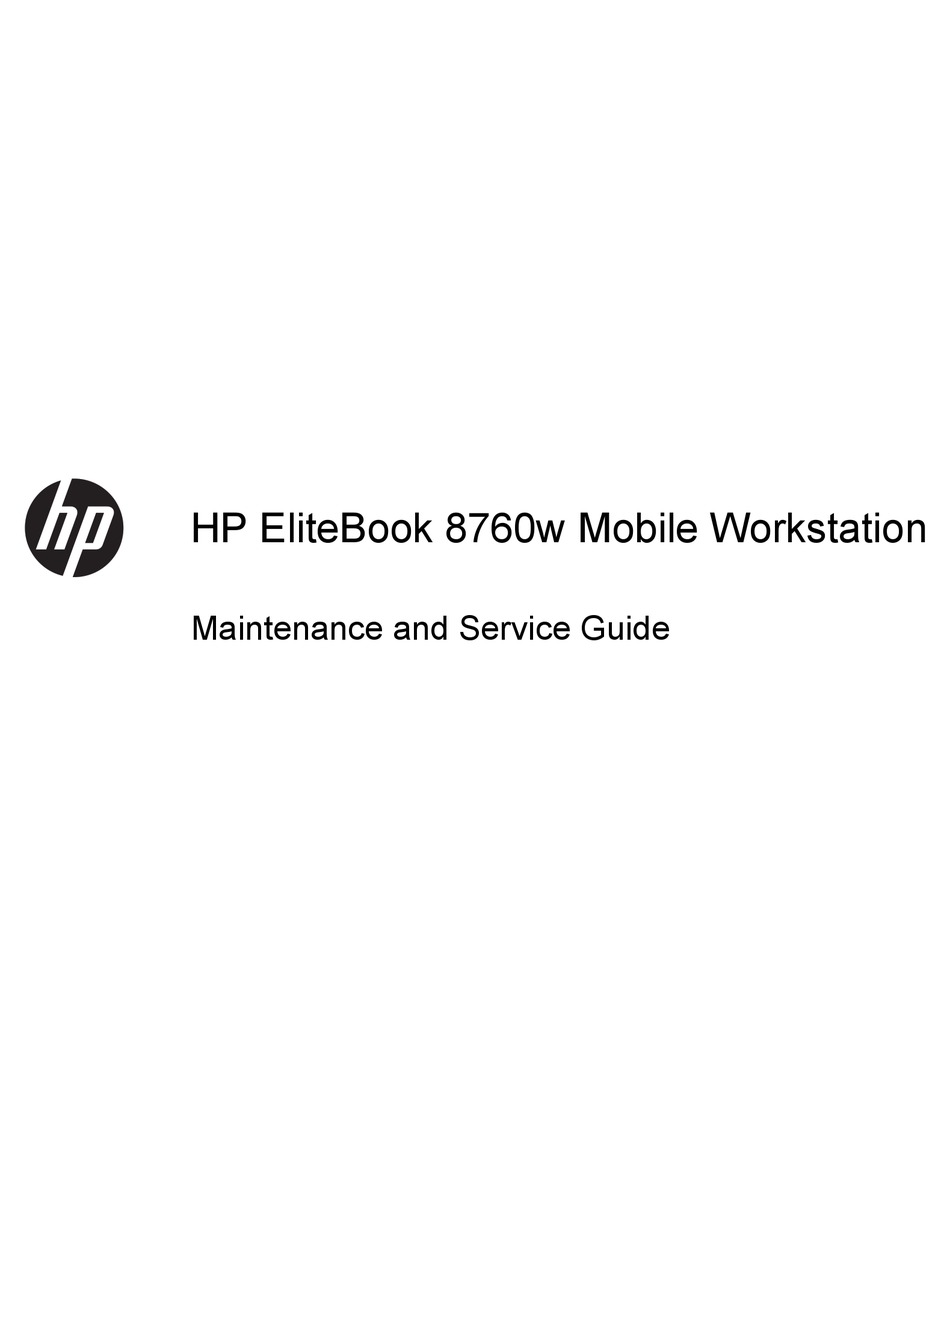 hp elitebook workstation 8760w